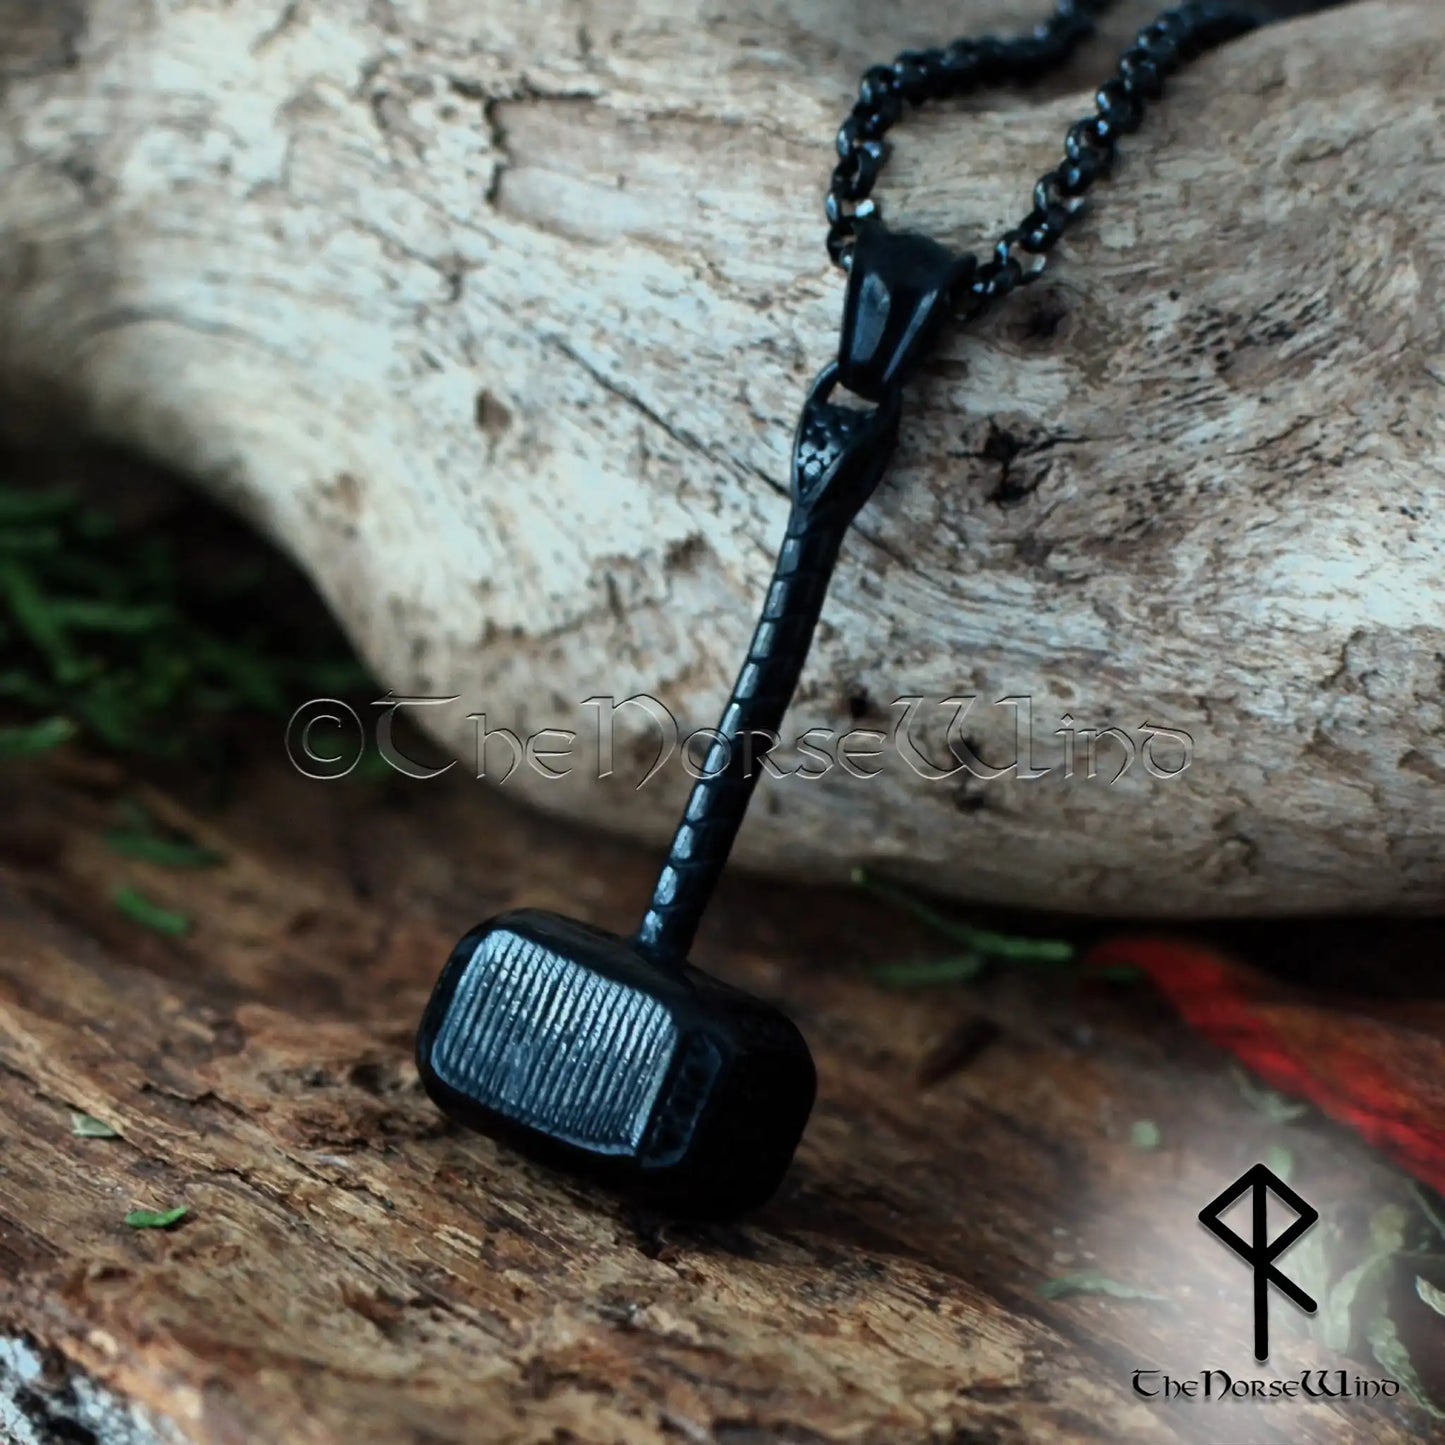 Black Thor's Hammer Necklace - Viking Mjolnir Stainless Steel Pendant